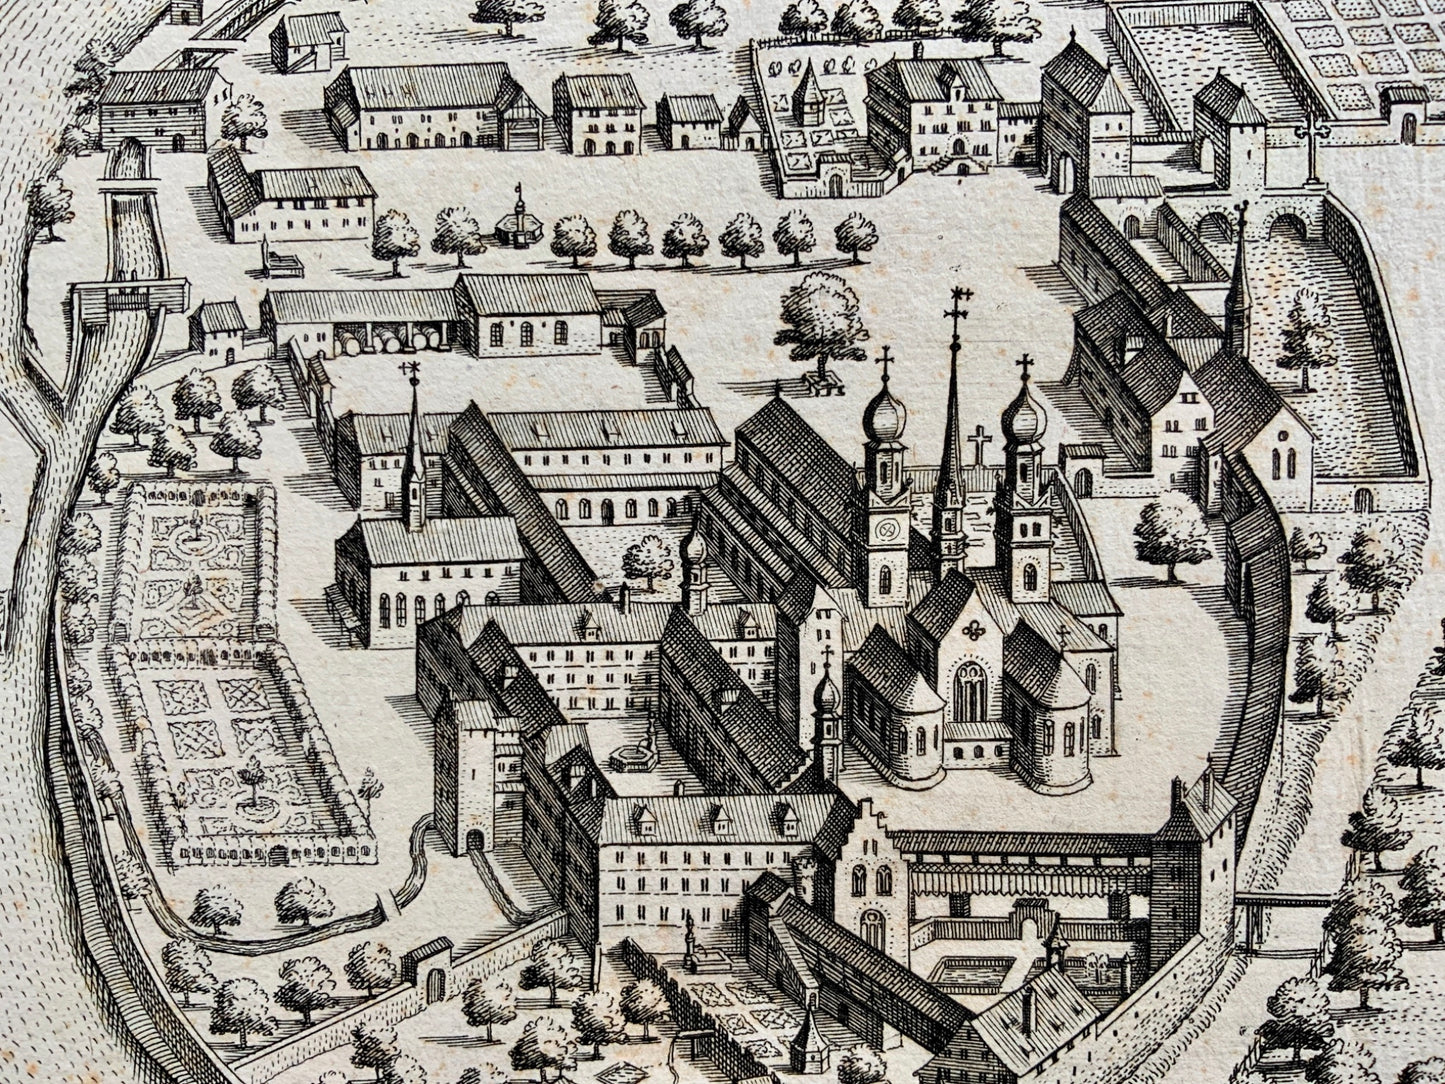 1654 Matthäus Merian - ‘bird’s eye’ view of WETTINGEN in Switzerland